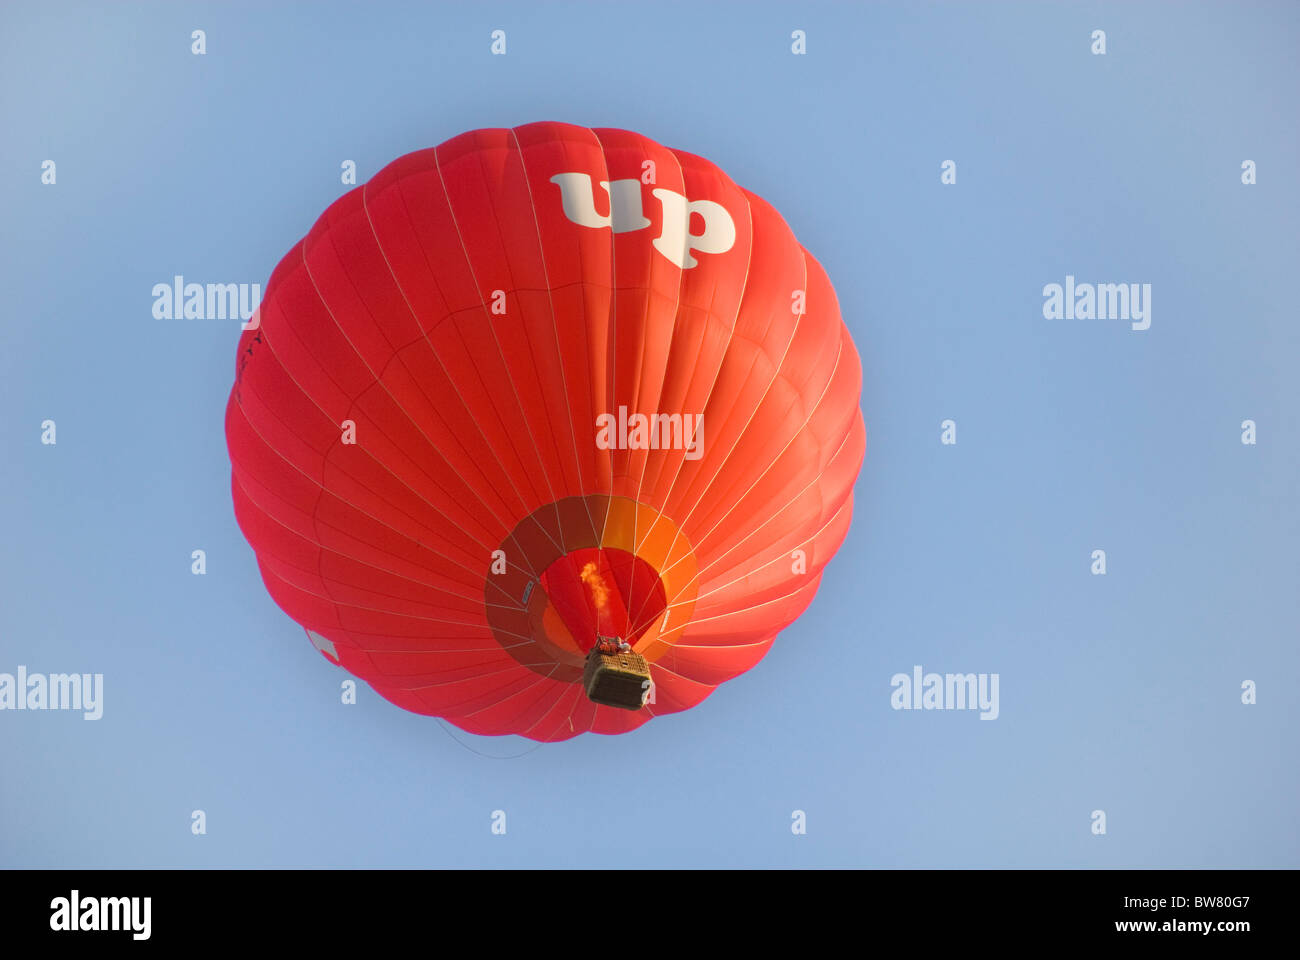 Heißluft-Ballon mit der Aufschrift UP, Bristol, England, Vereinigtes Königreich, Europa Stockfoto